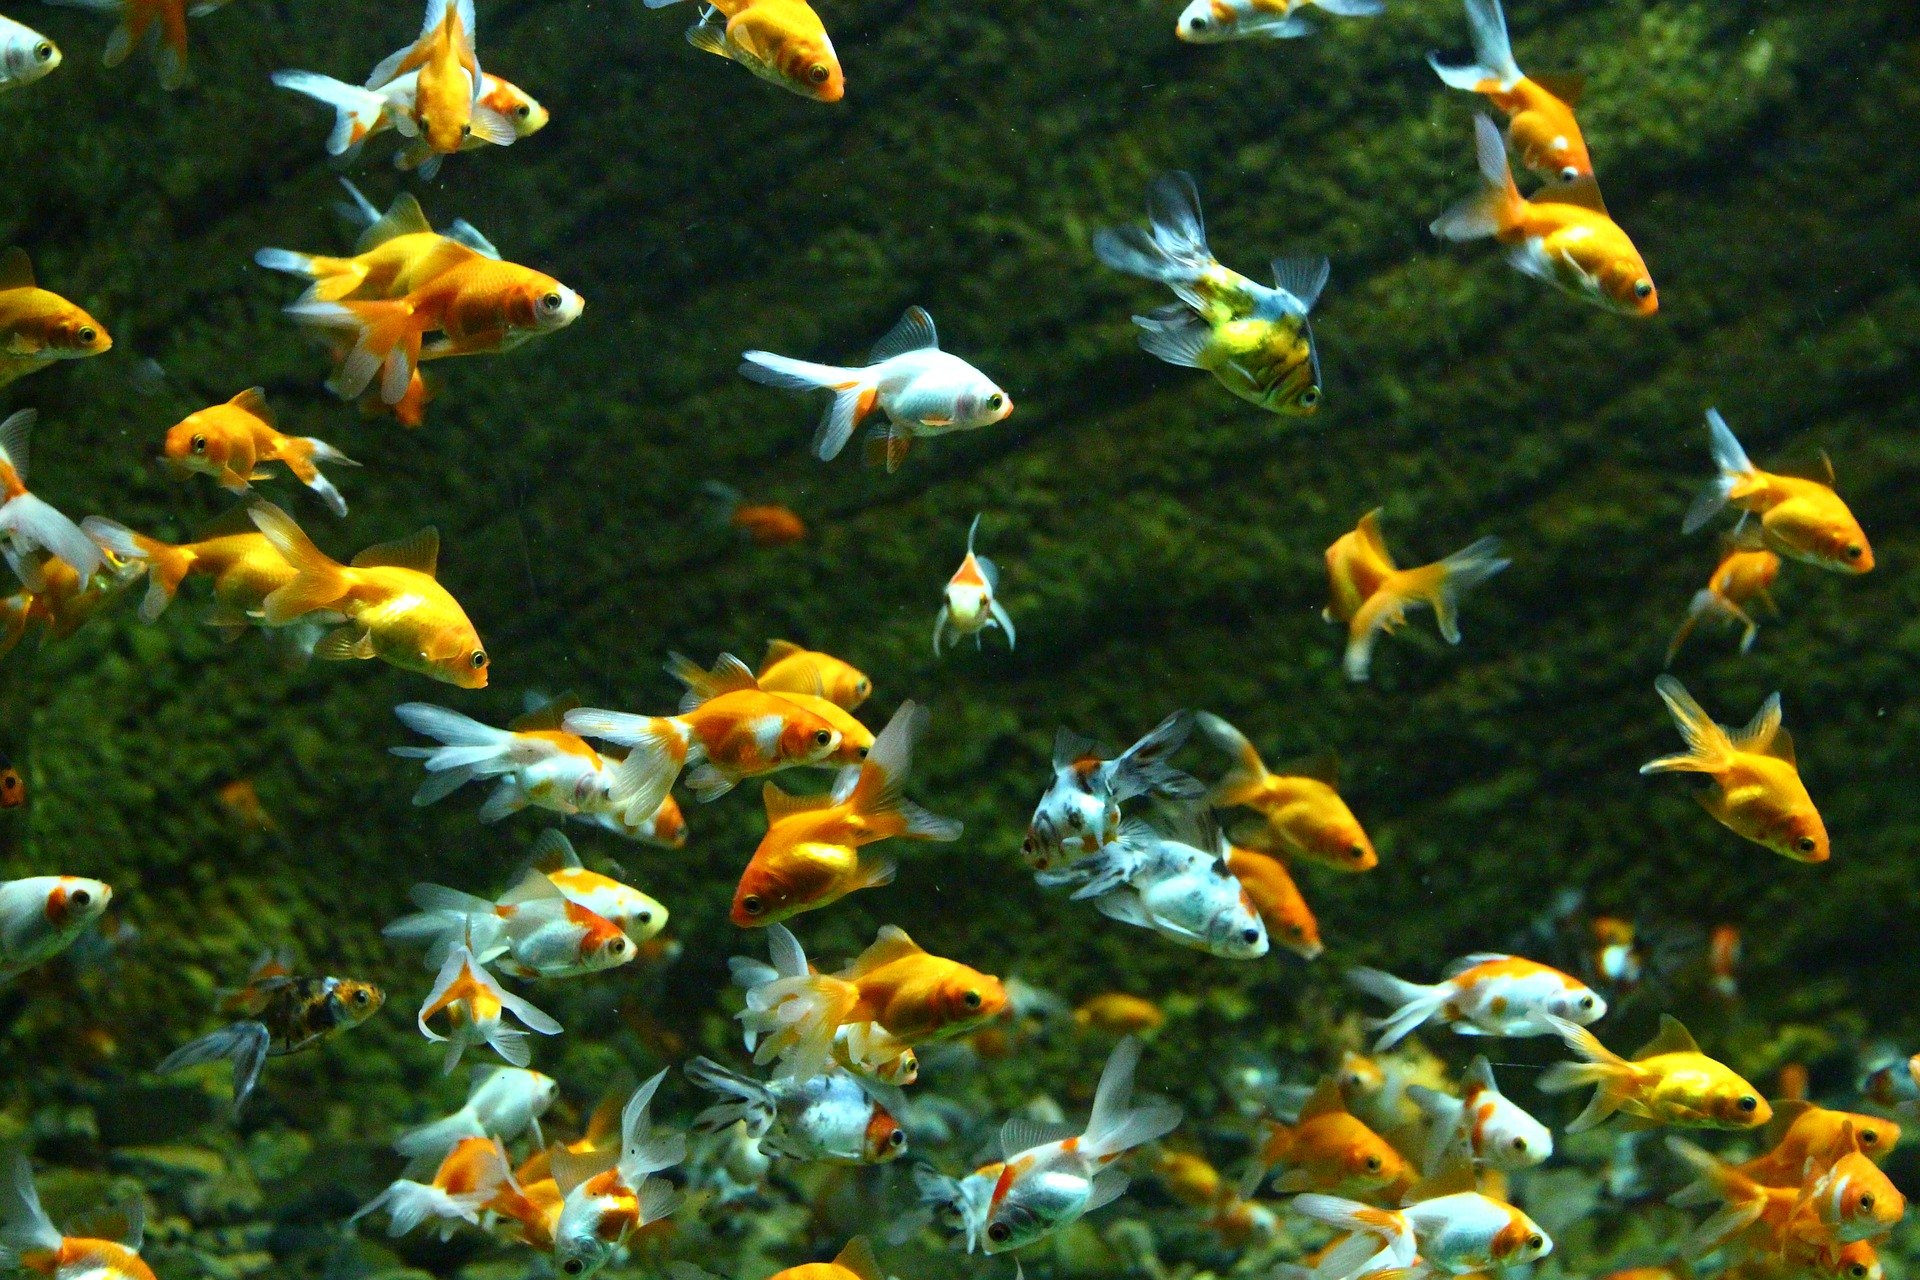 Ryby v jazierku urobia tento záhradný ornament ešte atraktívnejším. Medzi bežné druhy patrí lopatka dúhová a jalec zlatý.